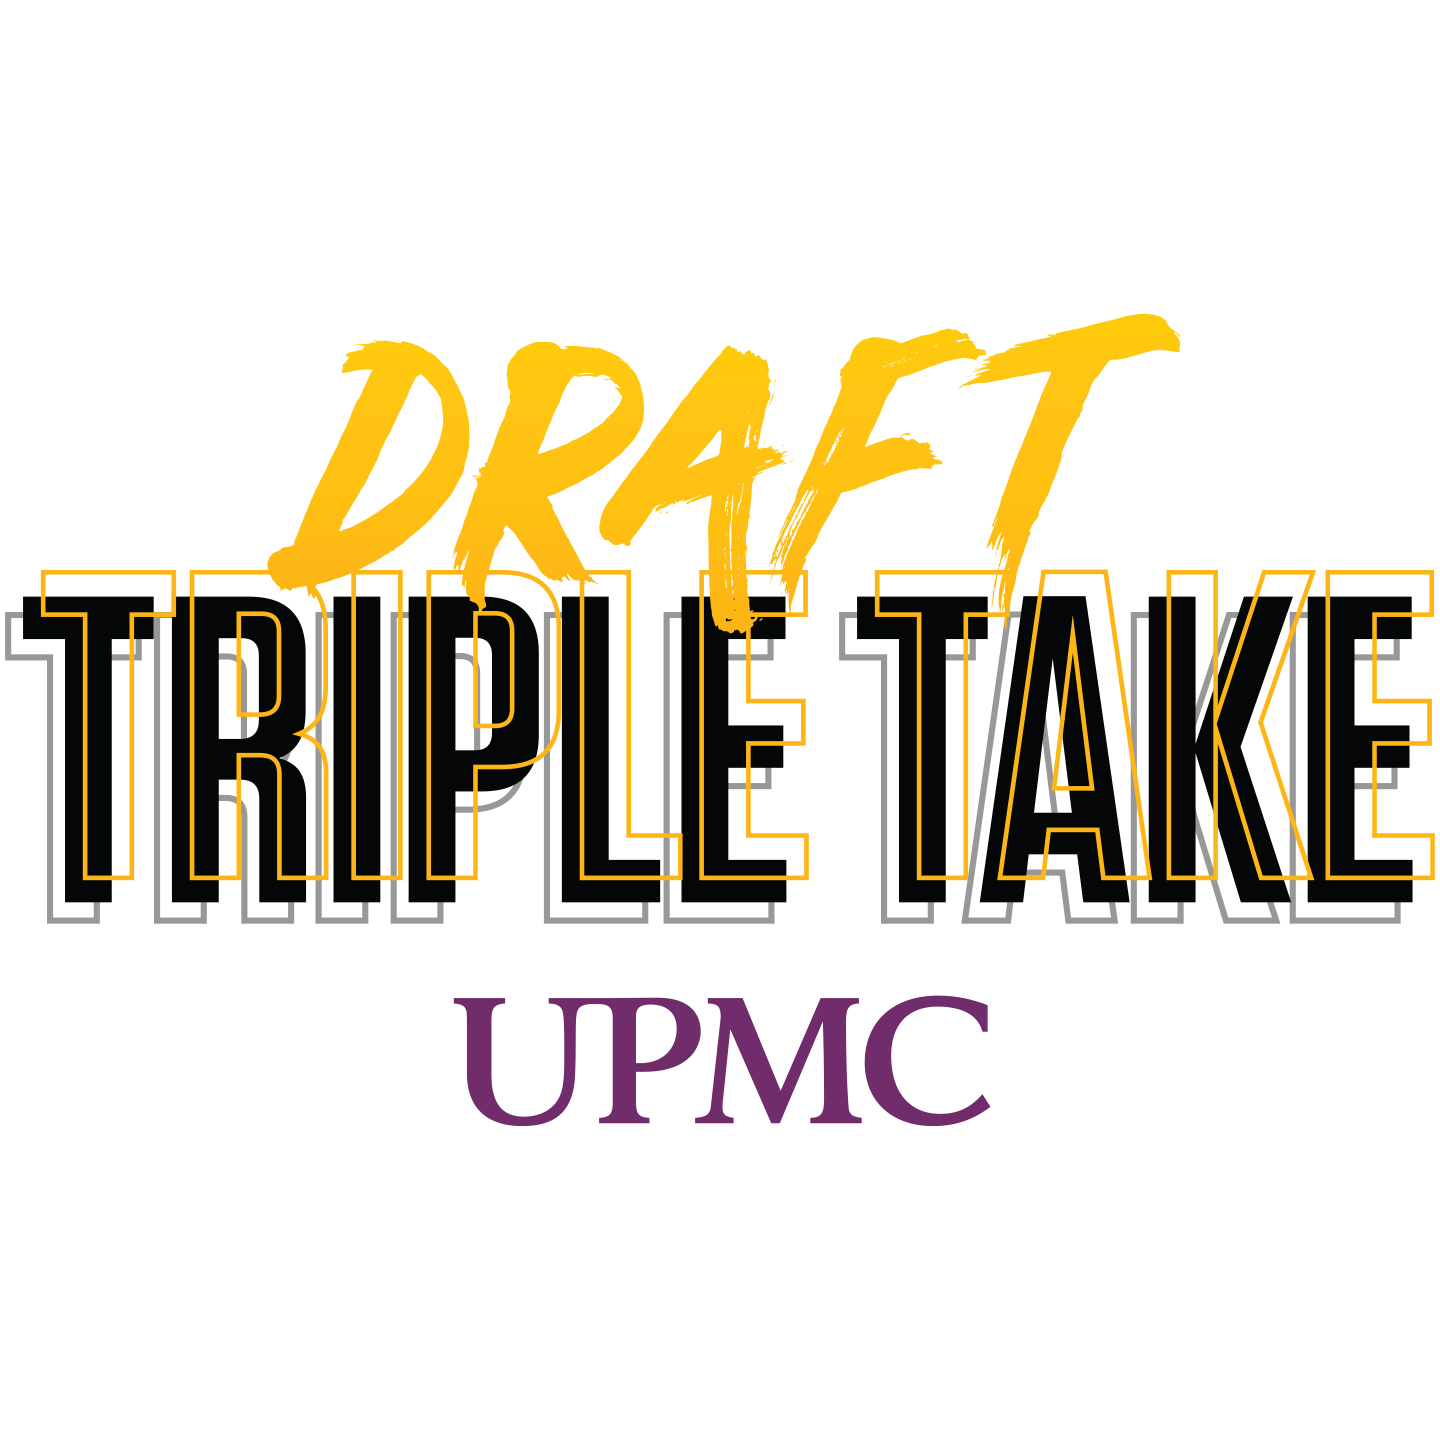 NFL Draft Triple Take (EDGE), March 13, 2022